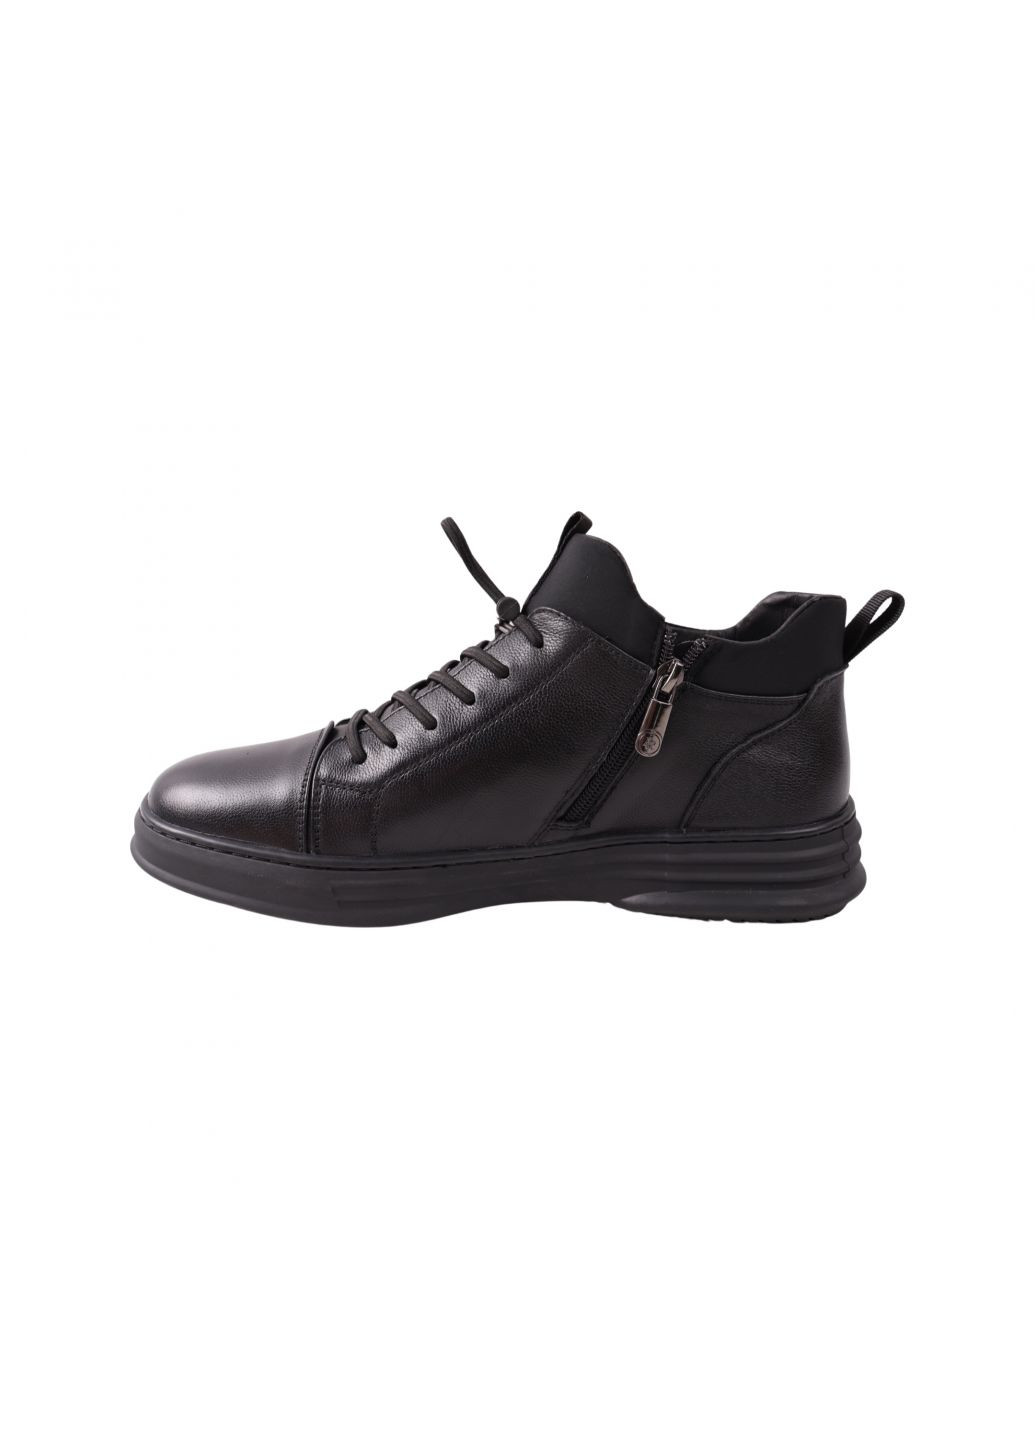 Черные ботинки мужские черные натуральная кожа Berisstini